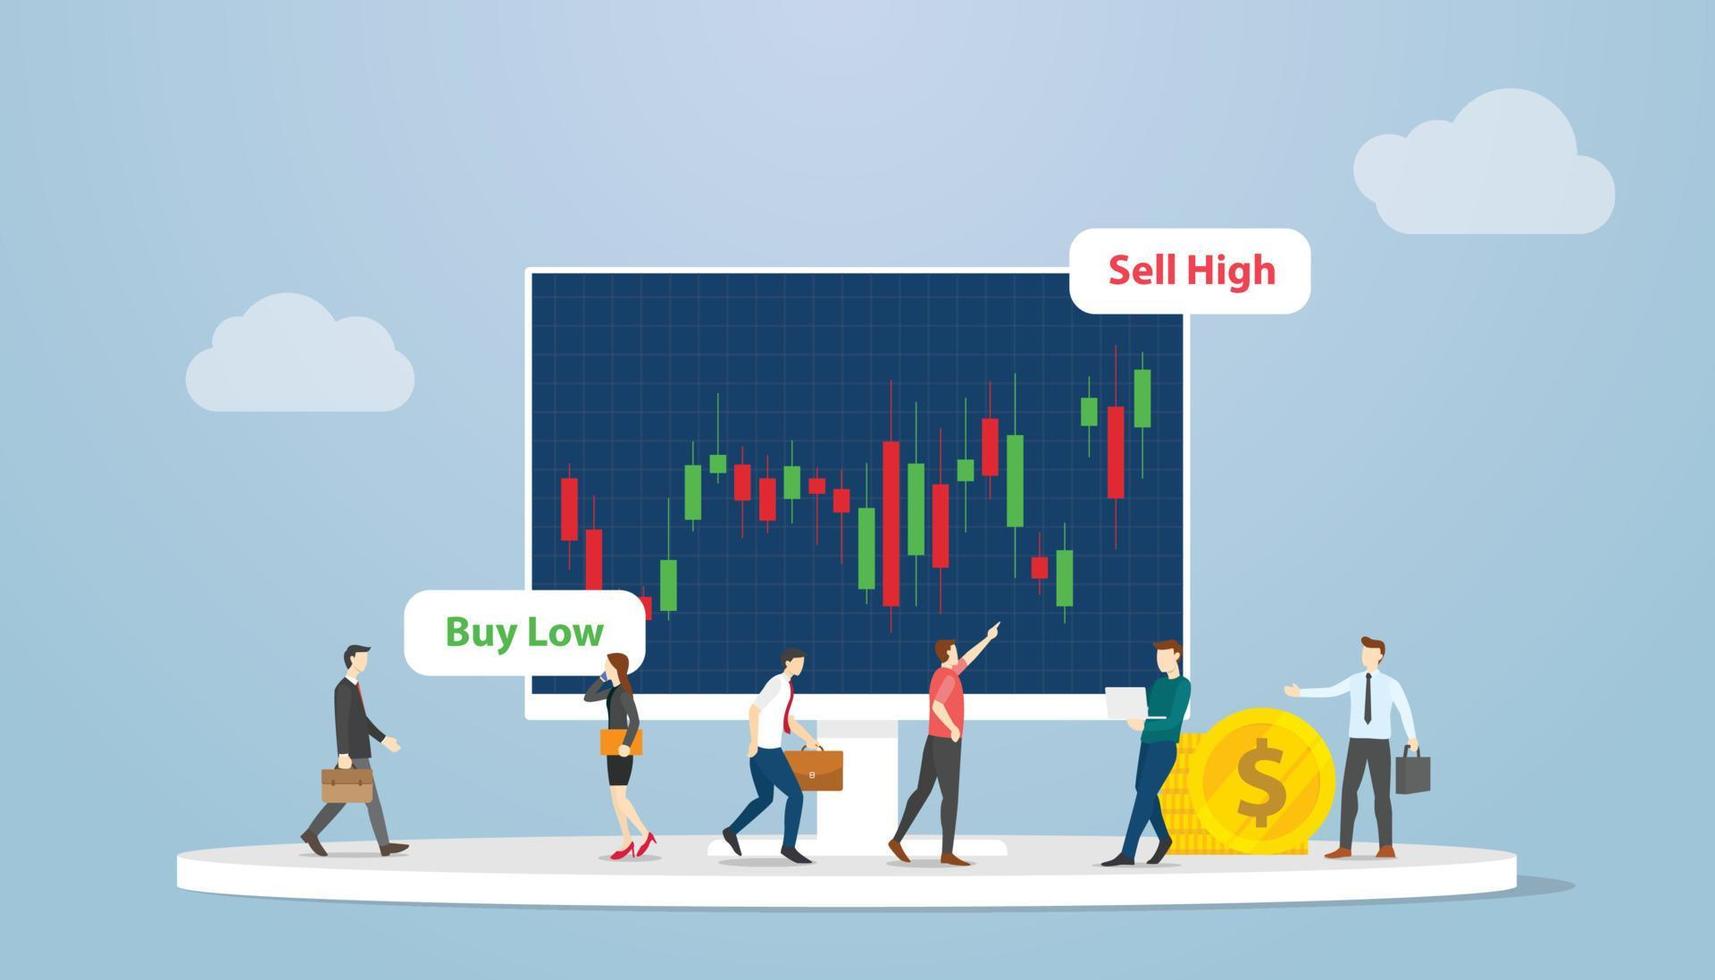 conceito de estratégia de mercado de ações de venda a descoberto com dados de análise de pessoas no gráfico com estilo simples e moderno vetor